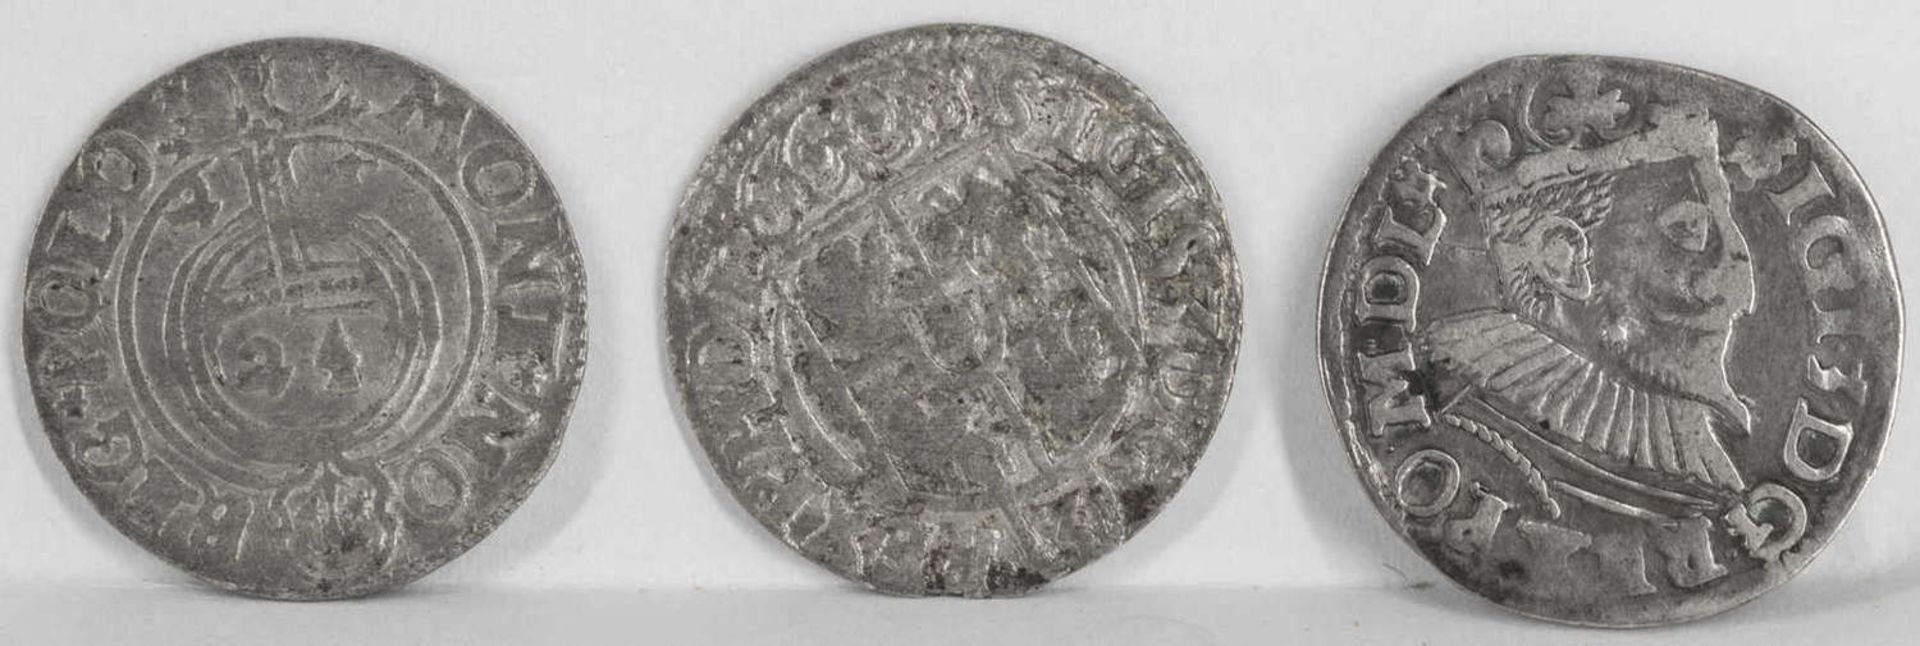 Polaen, Lot Silbermünzen, Sigismund. - Bild 2 aus 2